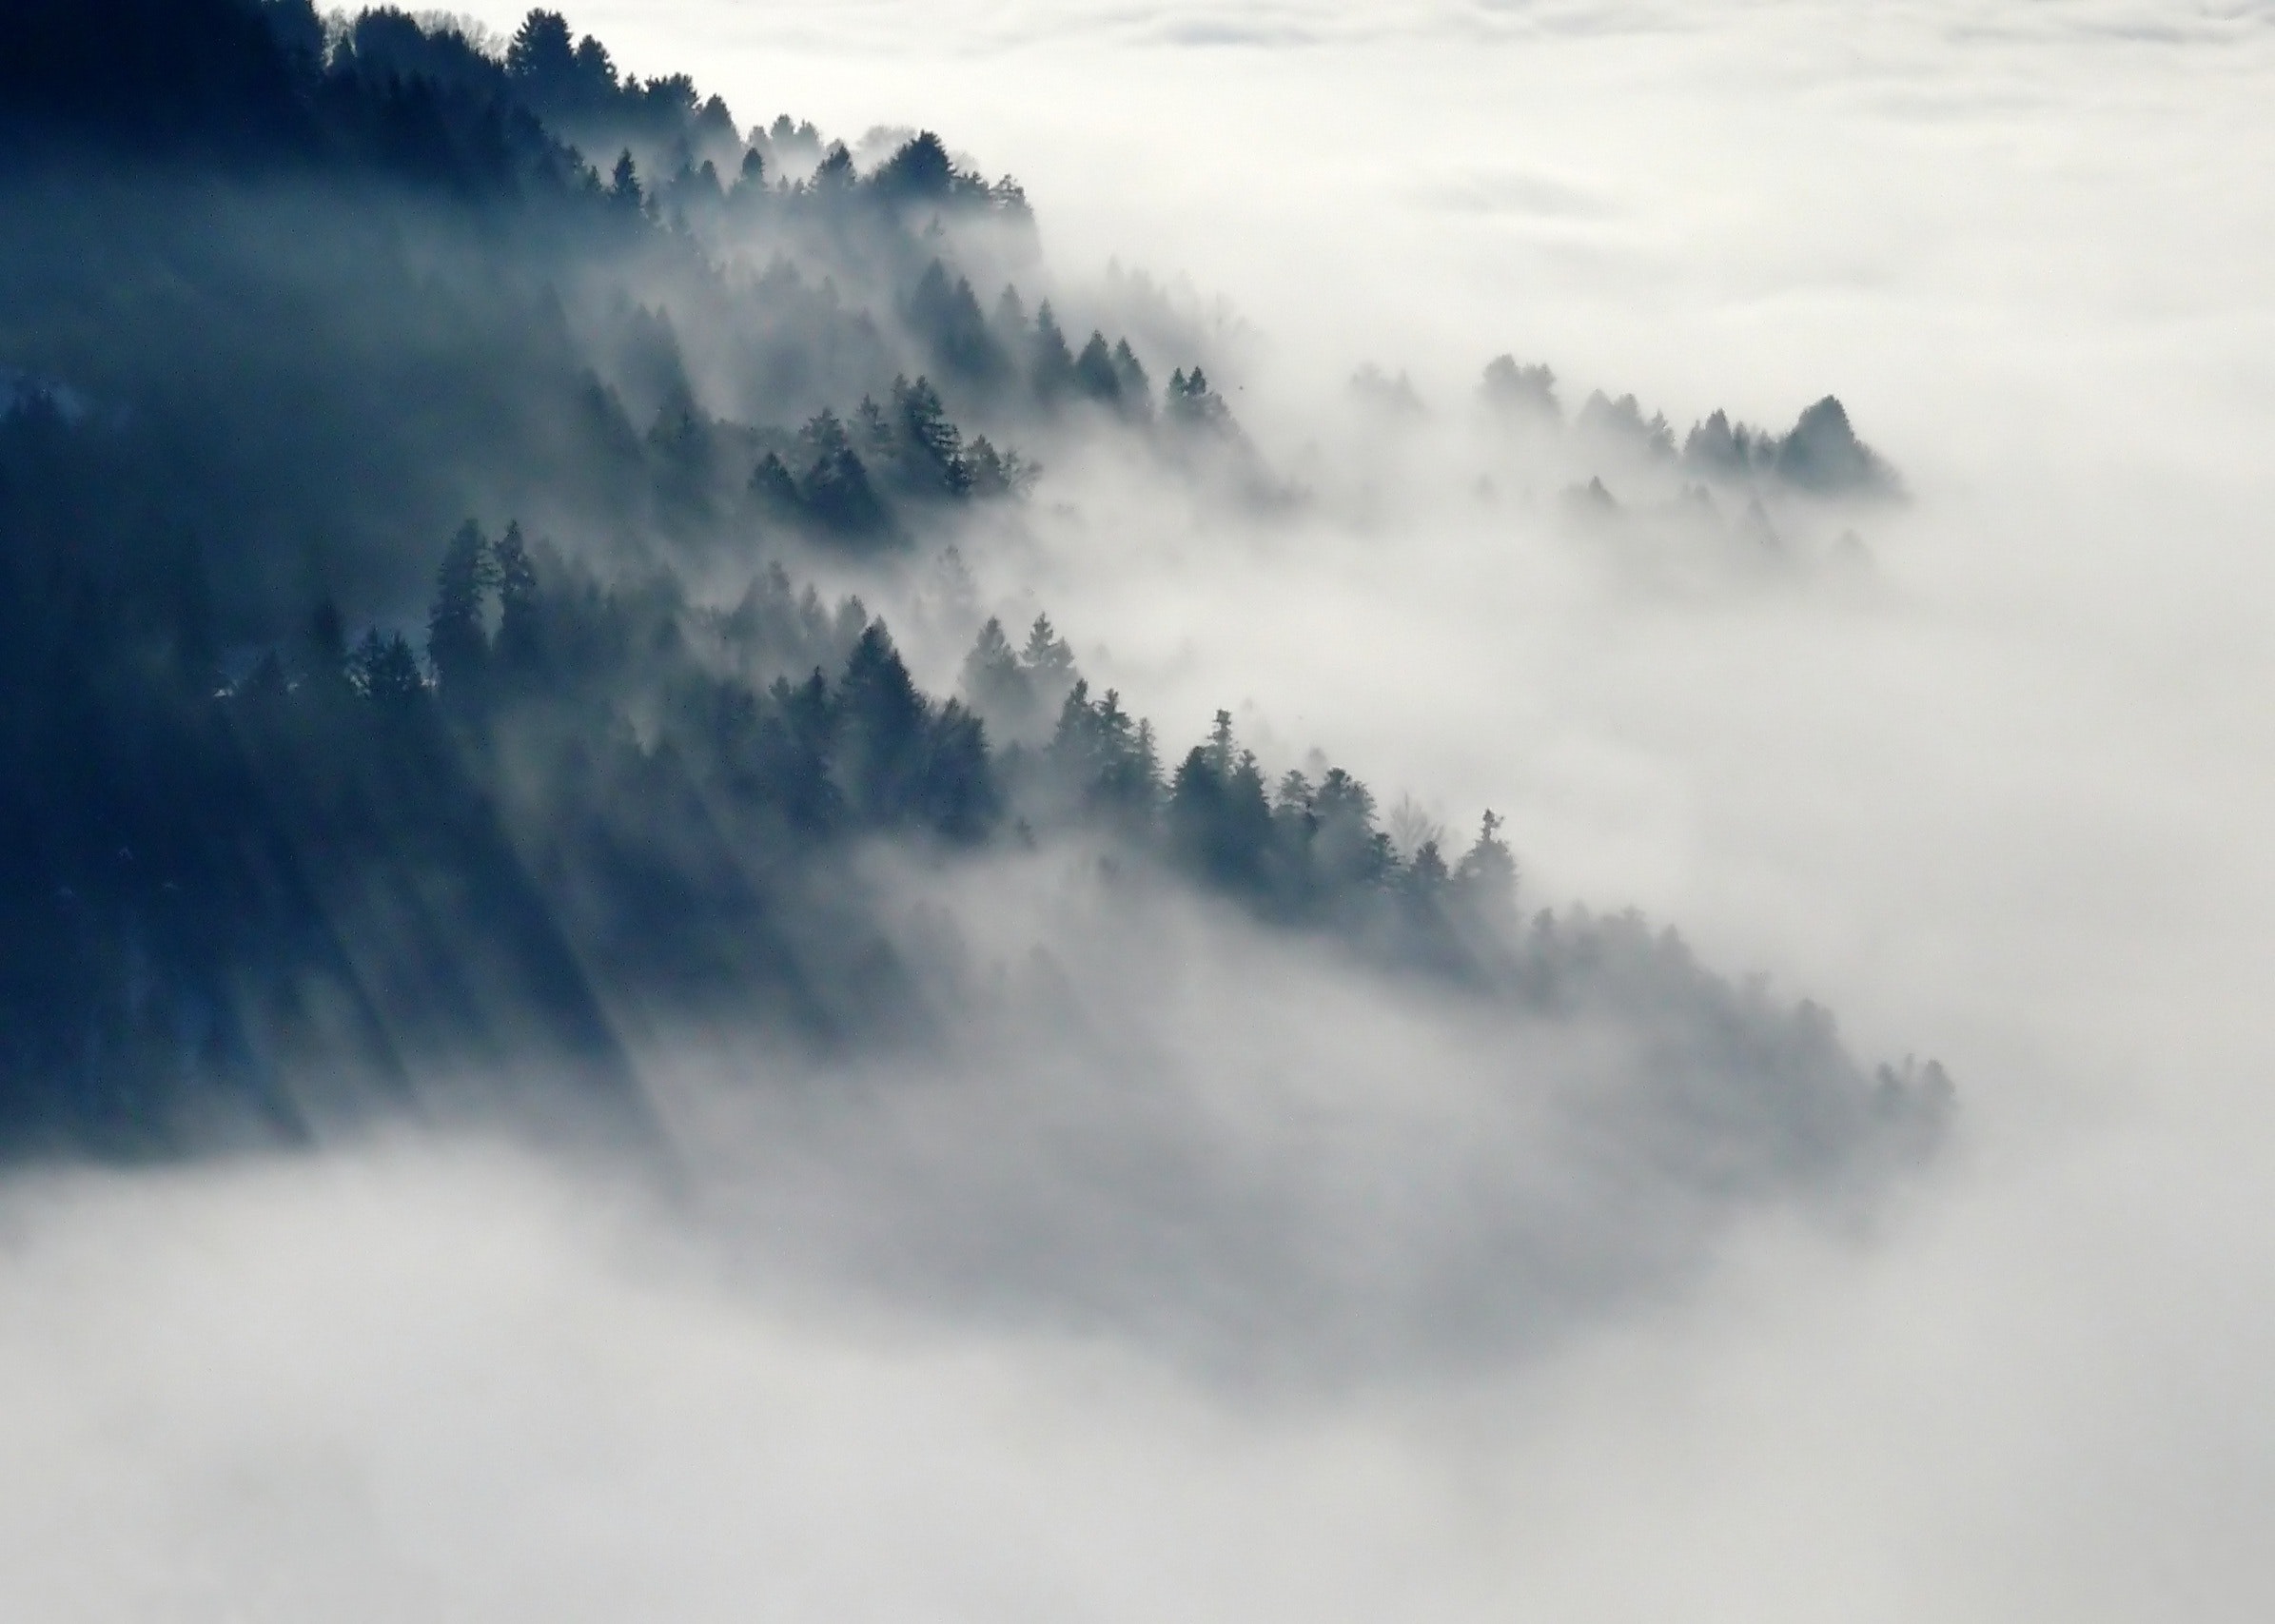 迷雾,晨曦,朦胧美 非常有意境的晨雾景象 超清电脑桌面手机壁纸